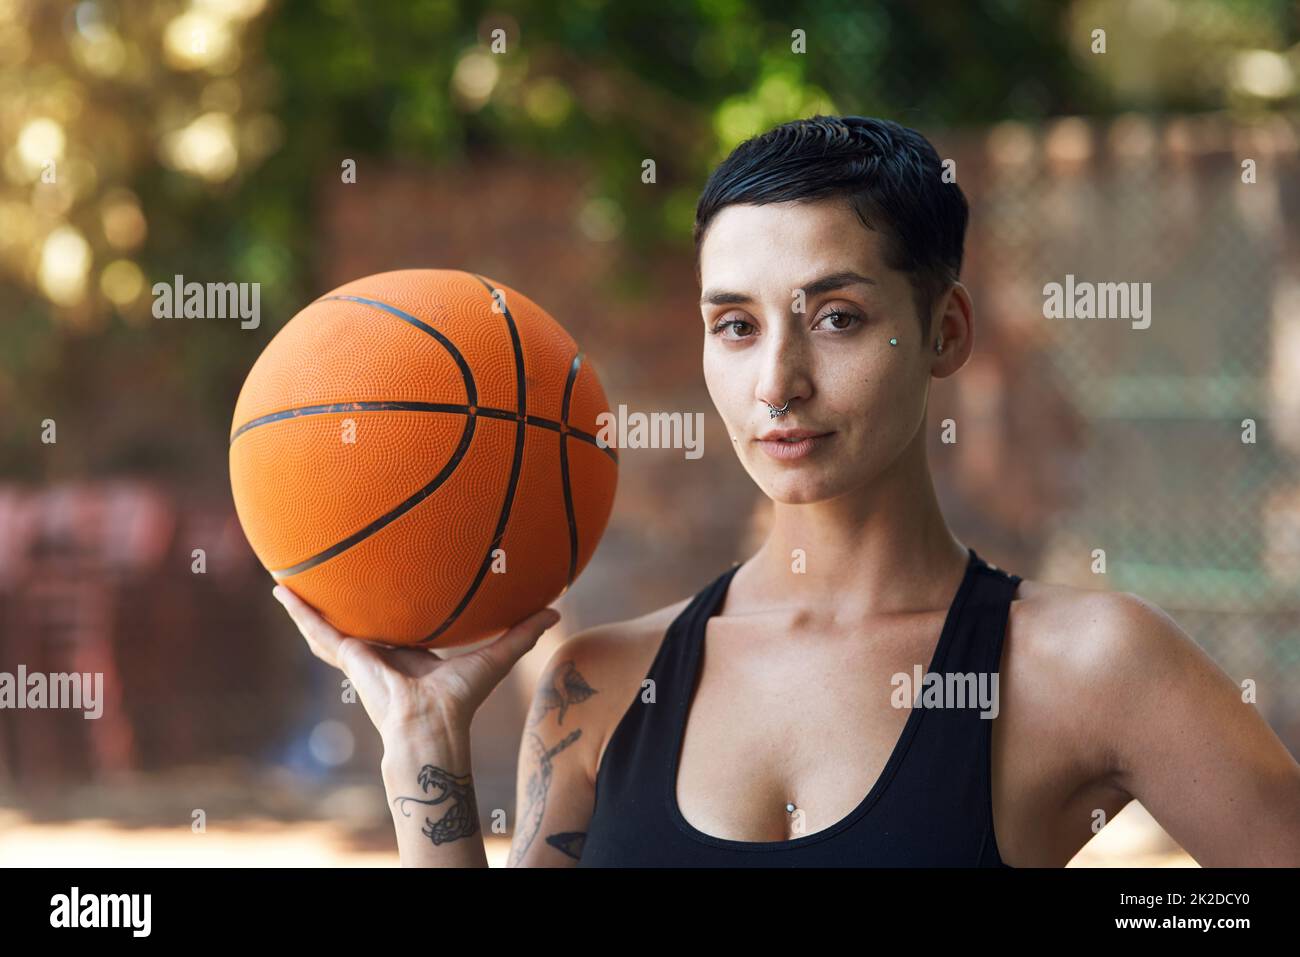 Reine de ce terrain. Portrait court d'une jeune athlète féminine sur le terrain de basket-ball. Banque D'Images